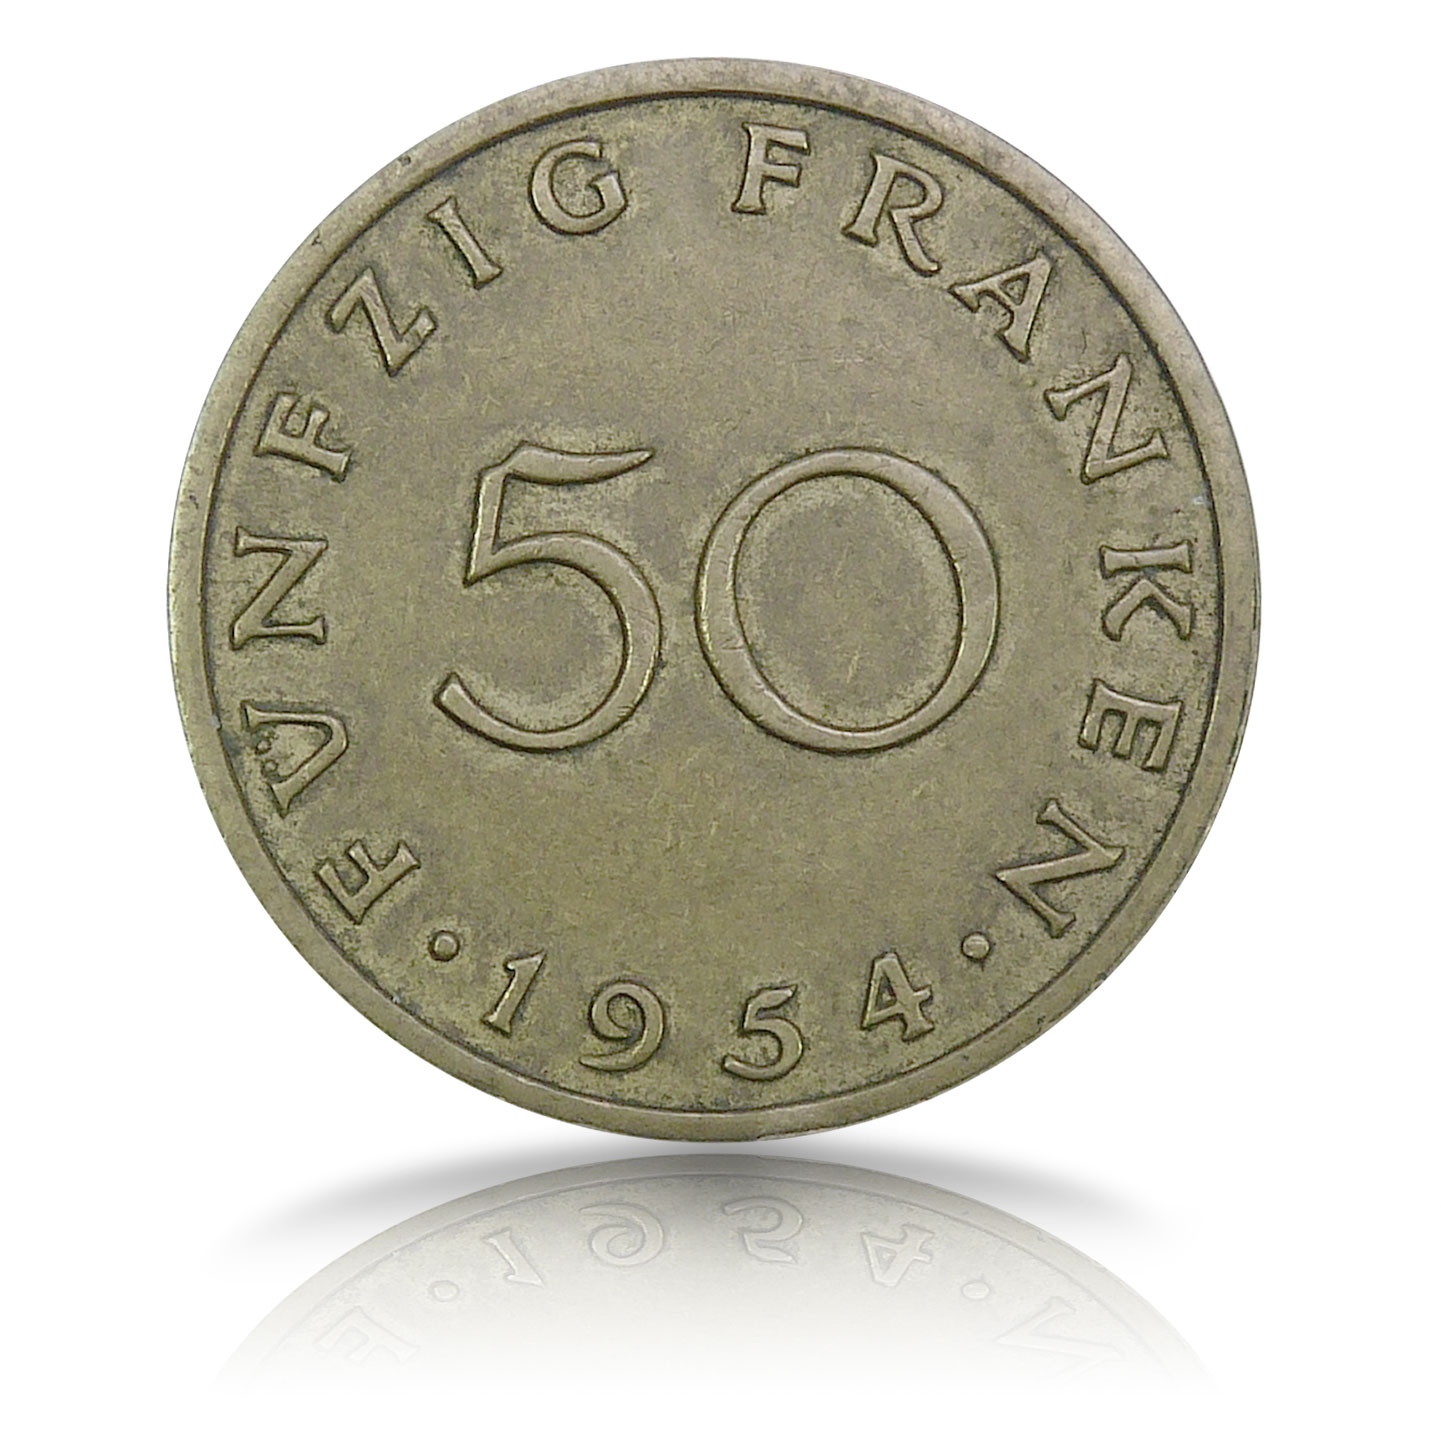 50-Saar-Franken